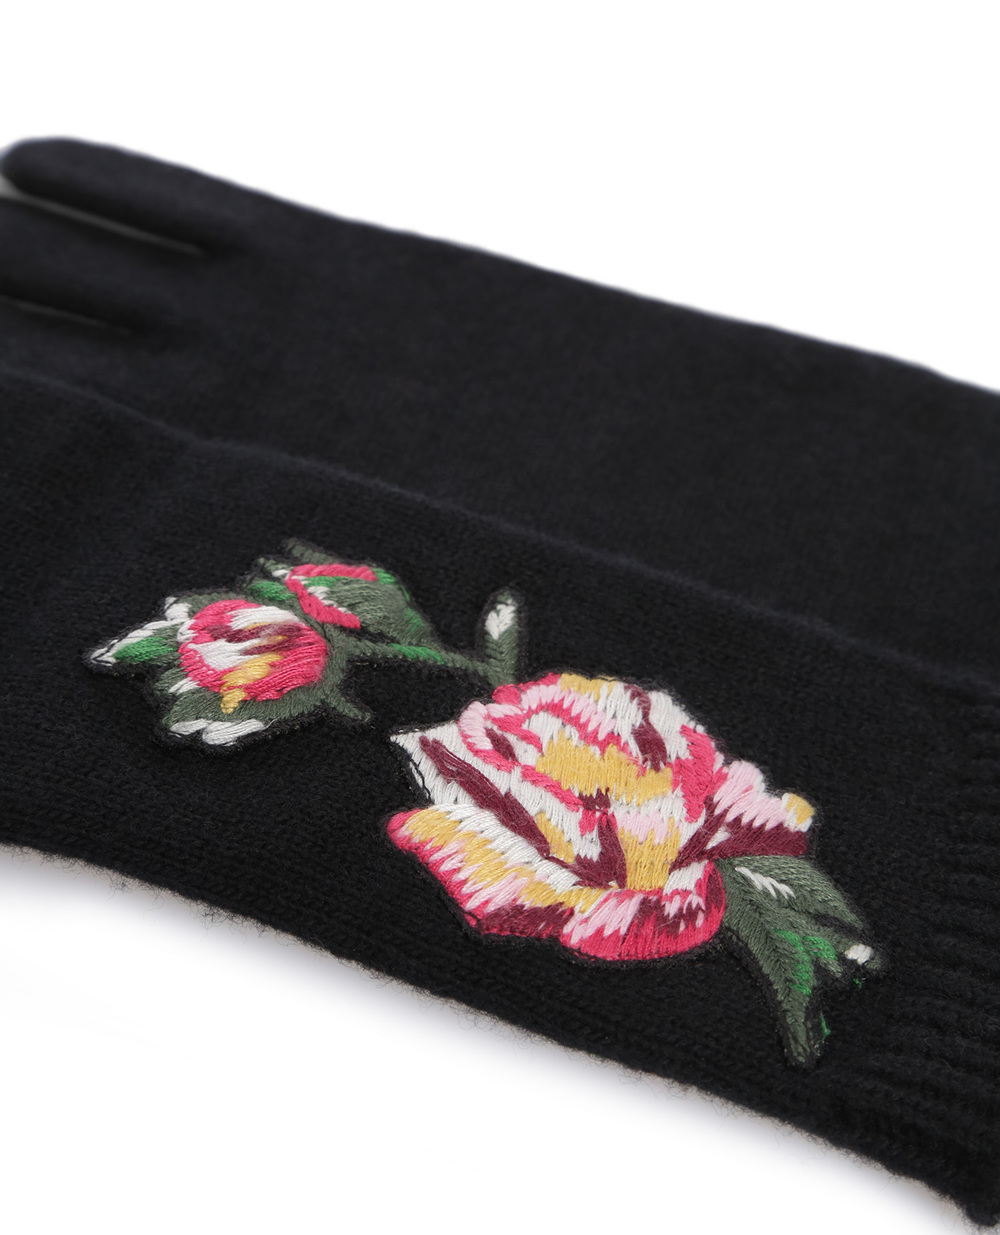 Шерстяные перчатки Dolce&Gabbana LB6A33-LK5V0, черный цвет • Купить в интернет-магазине Kameron